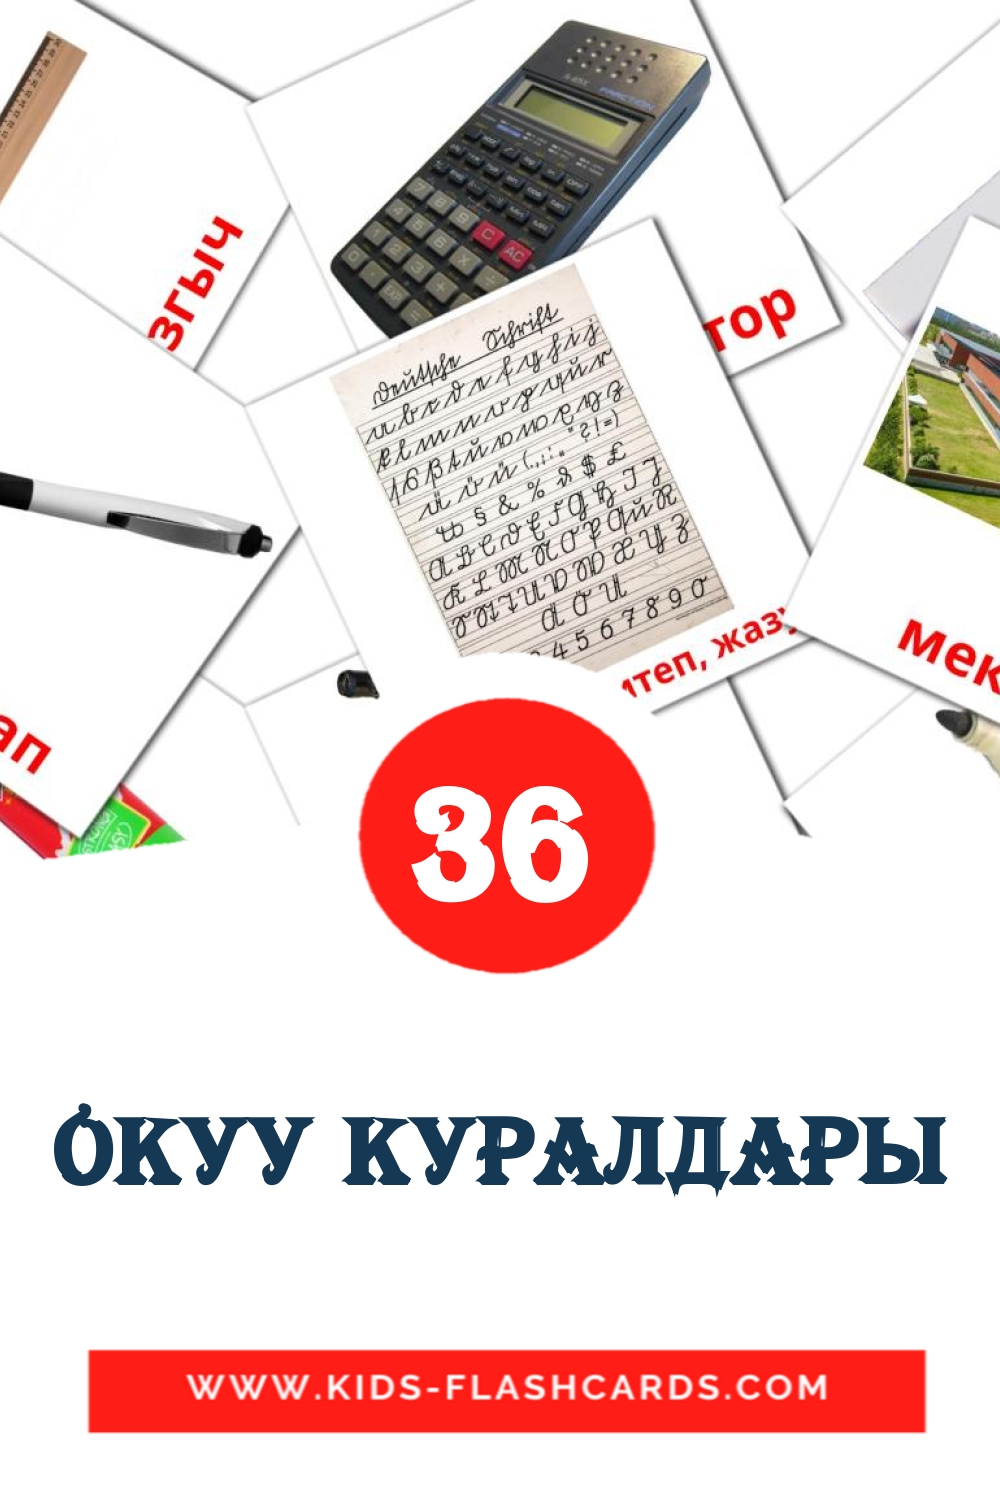 36 Tana  fotokaarten voor kleuters in het kirghize